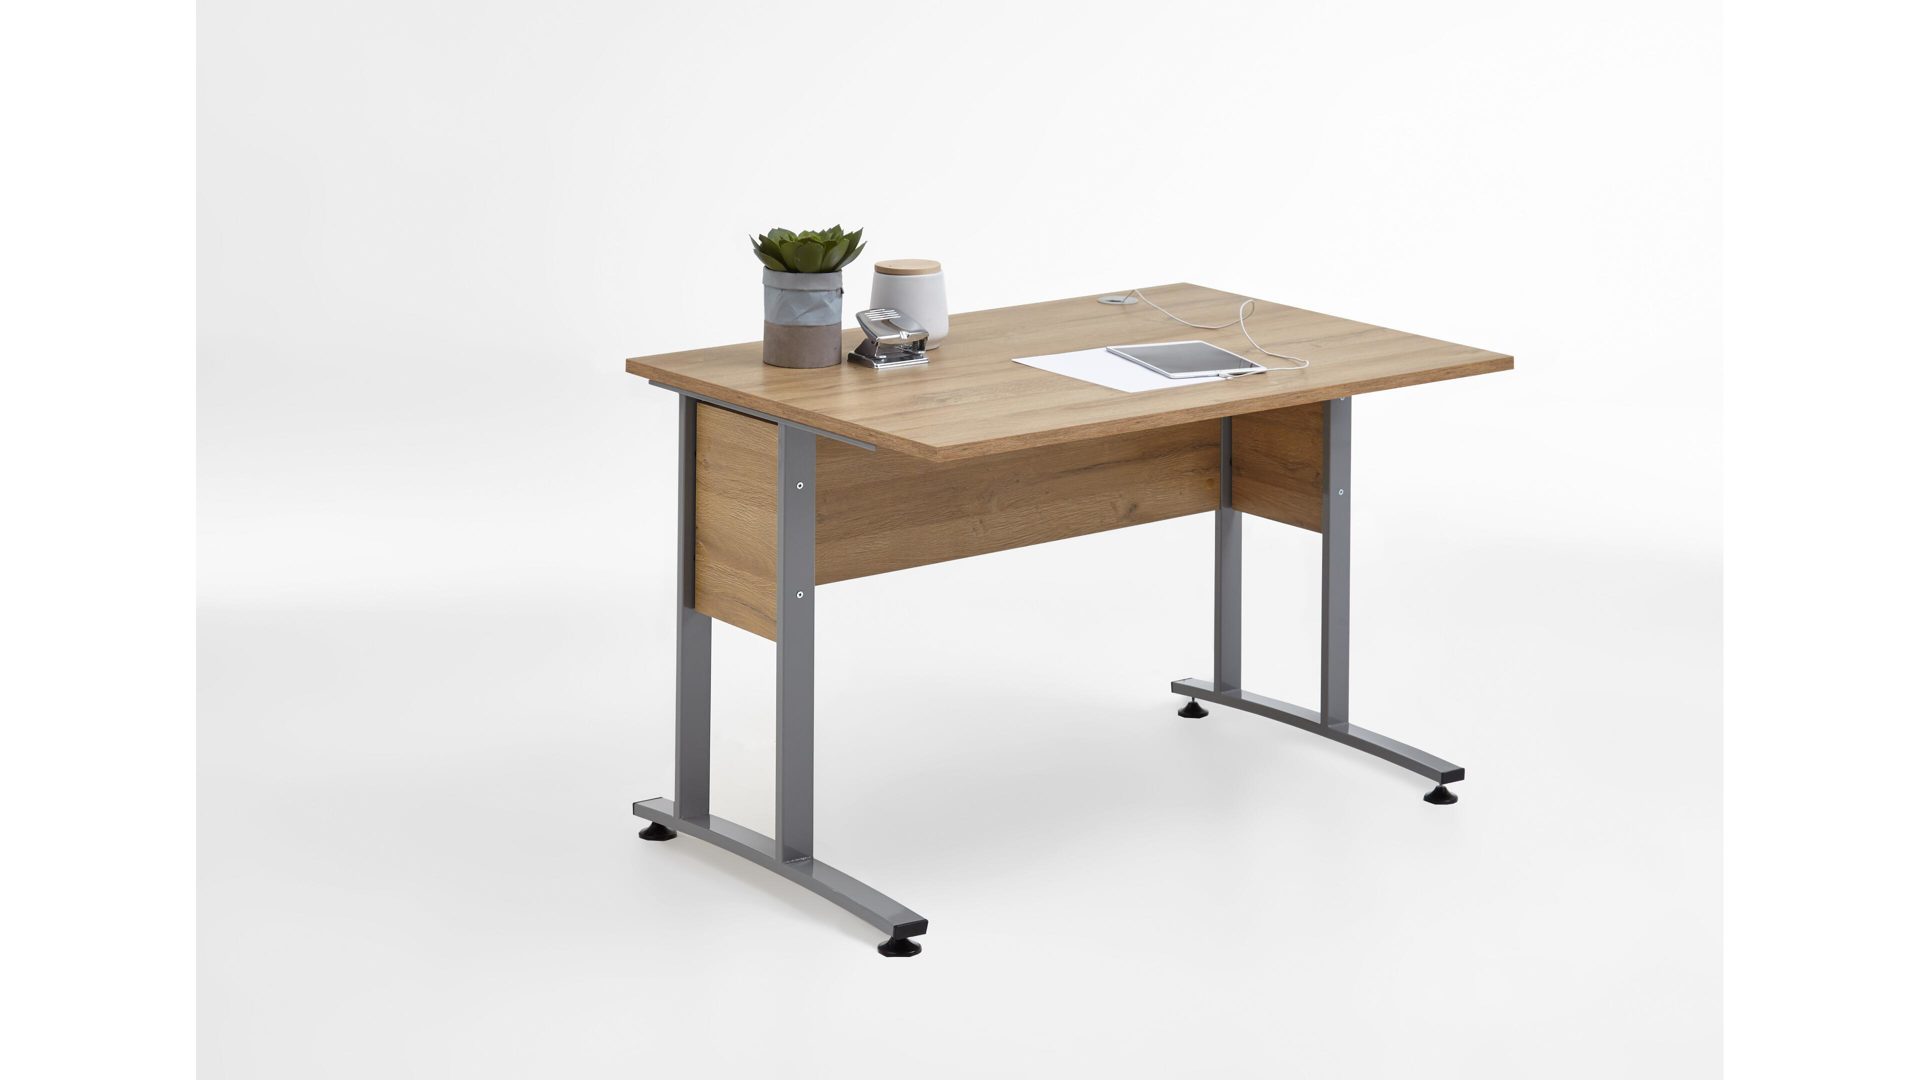 Schreibtisch Fmd furniture aus Holz in Holzfarben Schreibtisch als Büromöbel alteichefarbene Kunststoffoberflächen – Länge ca. 120 cm